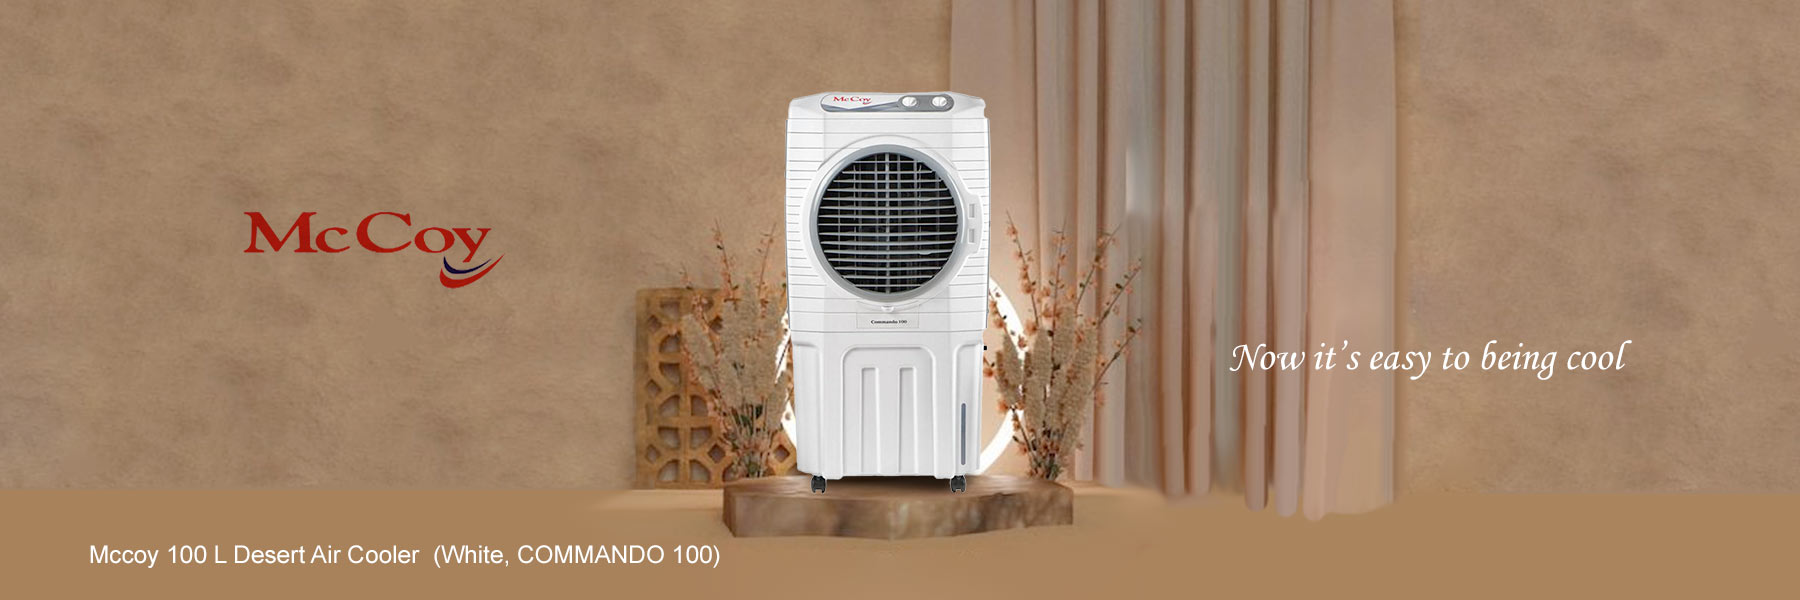 Mccoy 100 L Desert Air Cooler  (White, COMMANDO 100)